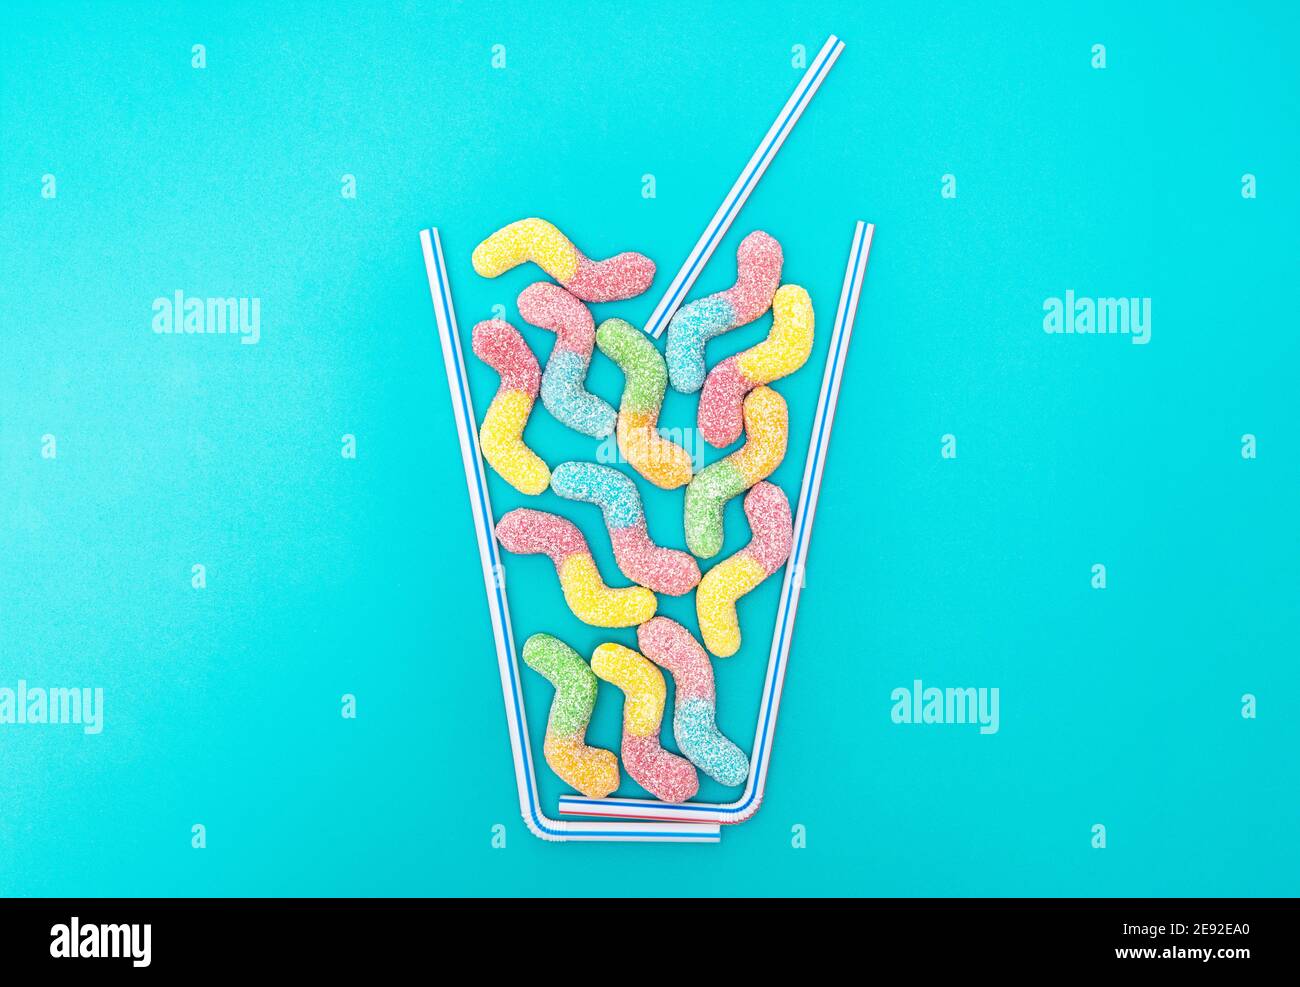 Composition de plat de cocktail d'été créative à base de pailles à boire et vers délicieux enrobés de sucre vif sur fond bleu clair Banque D'Images